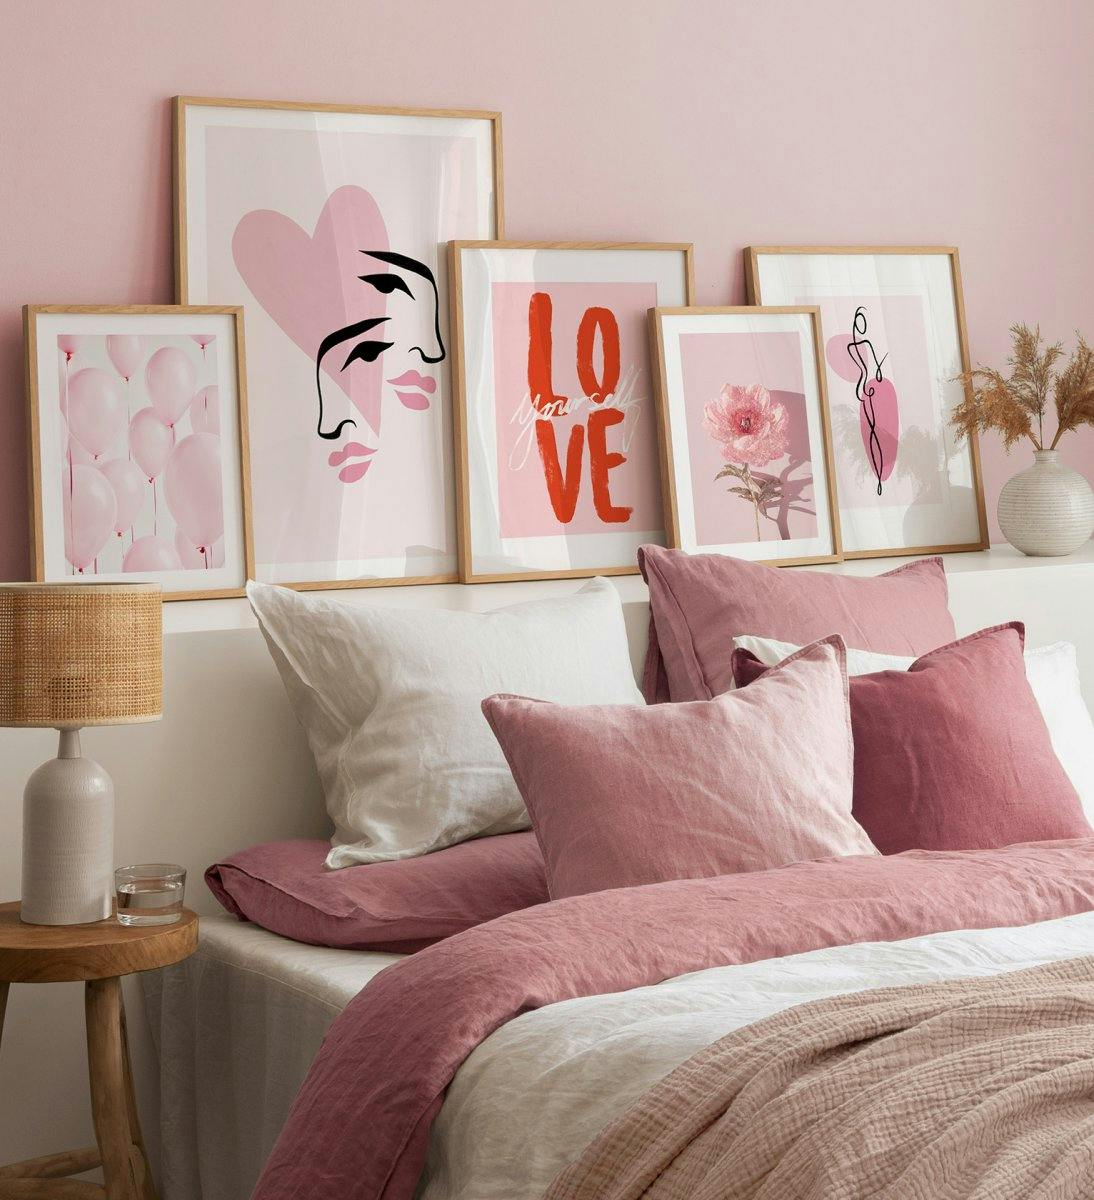 침실을 위한 오크 프레임이 있는 꽃, 선 모양 및 따옴표의 삽화와 사진이 있는 분홍색 갤러리 벽